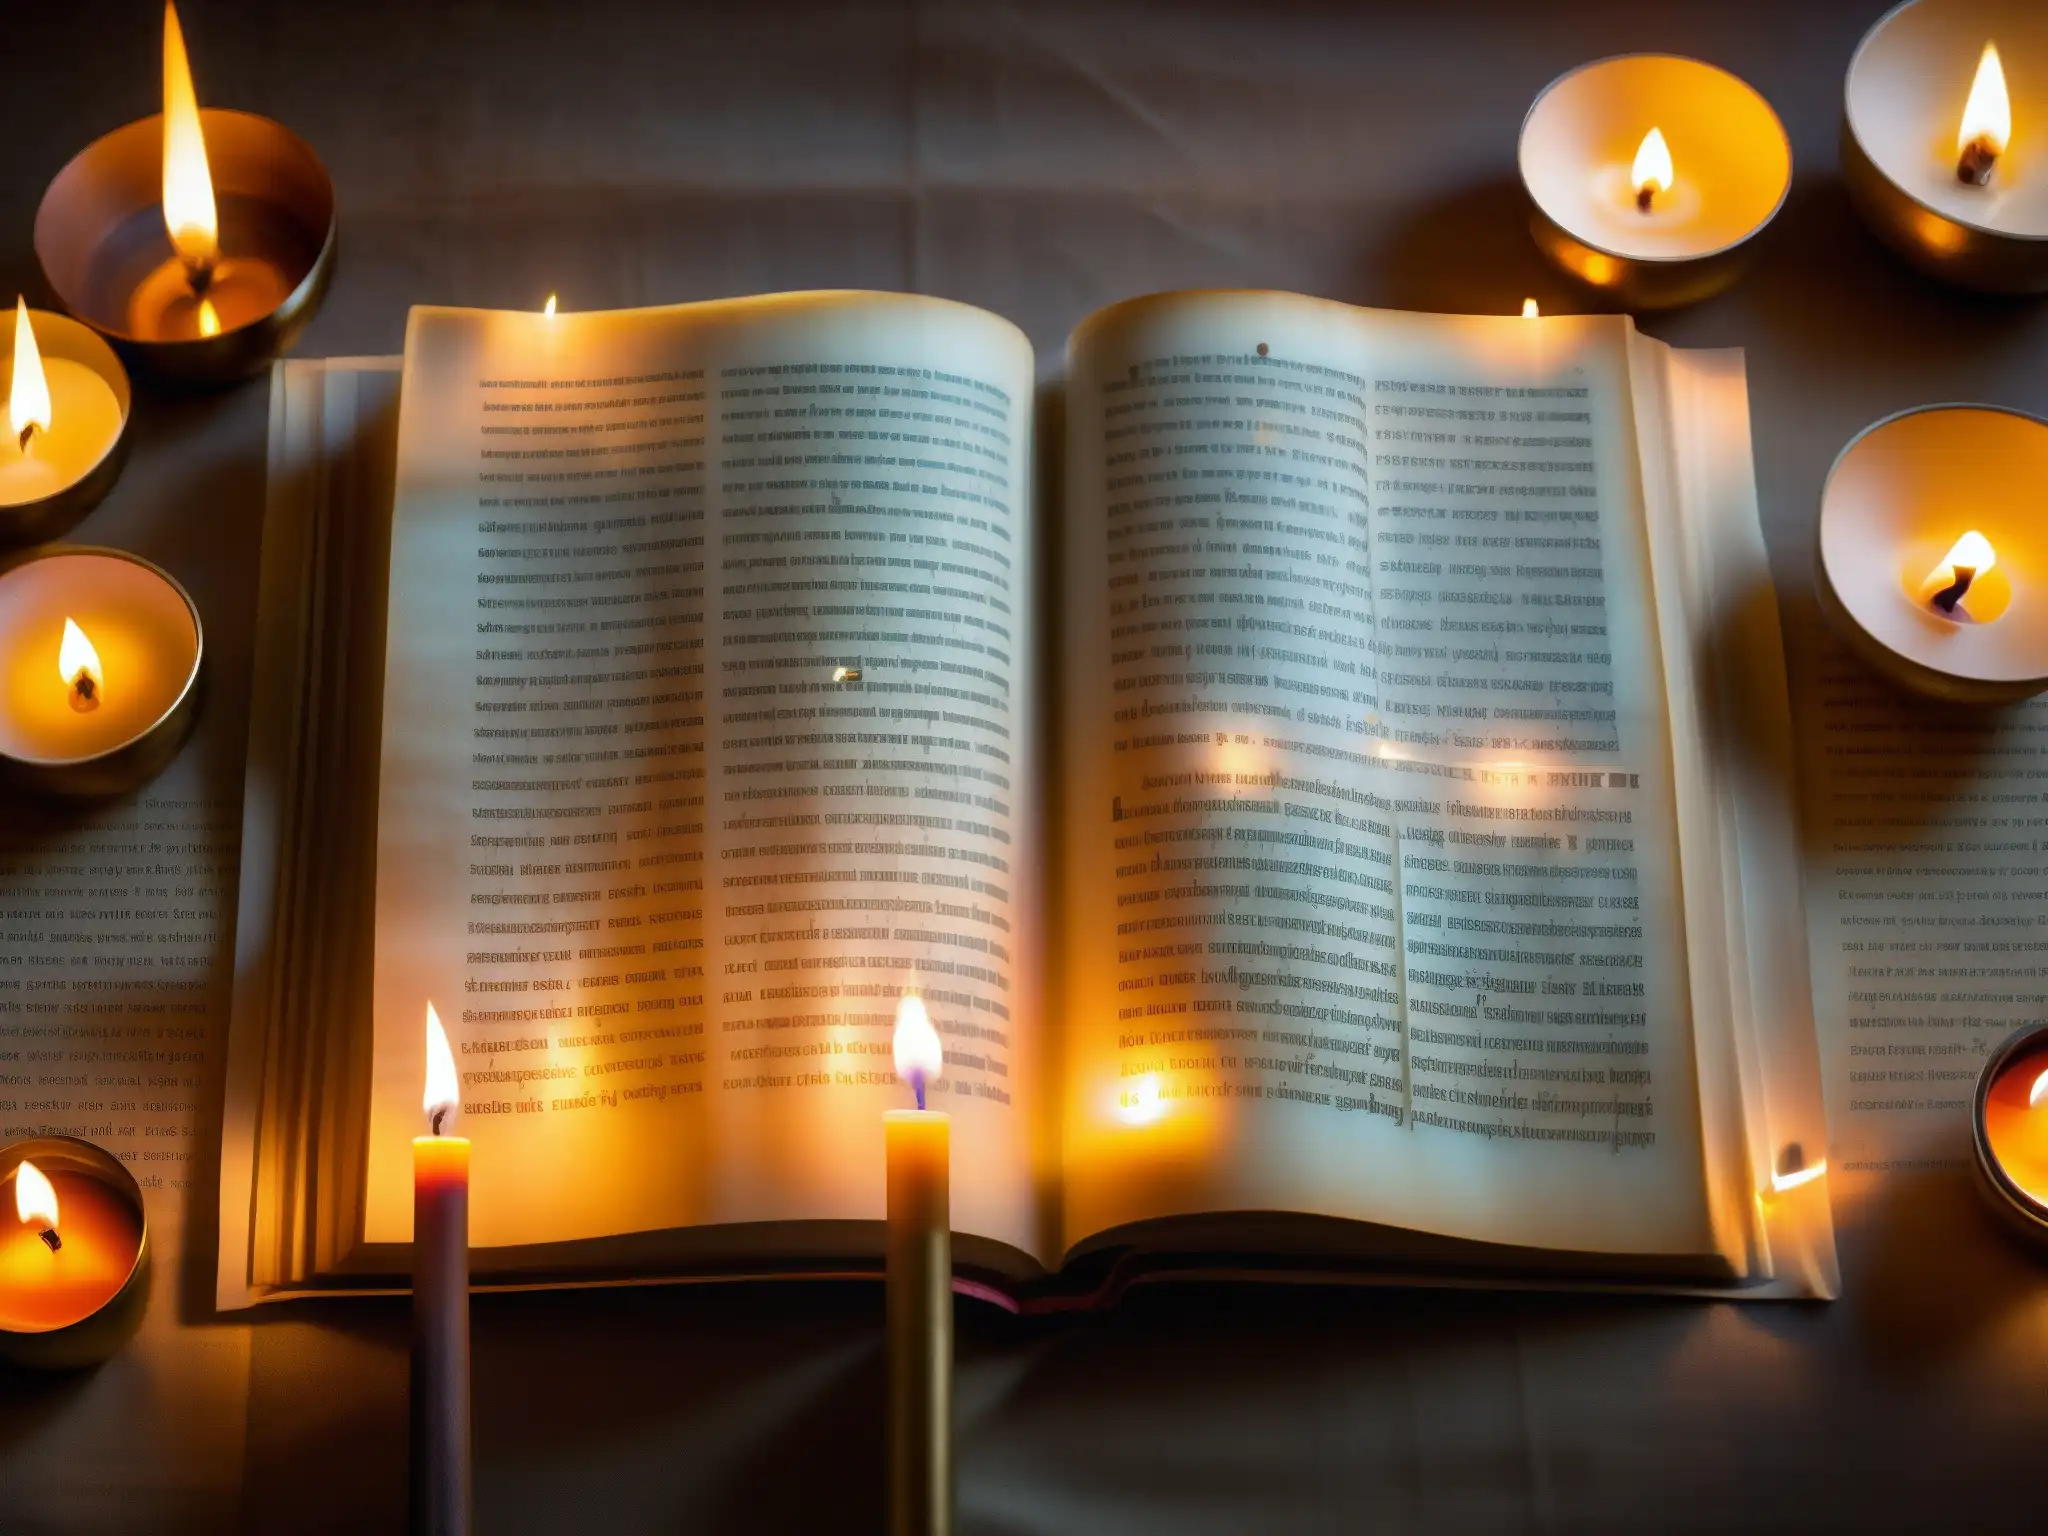 Antiguos textos hindúes con profecías de Kalki, iluminados por velas en templo ornamentado